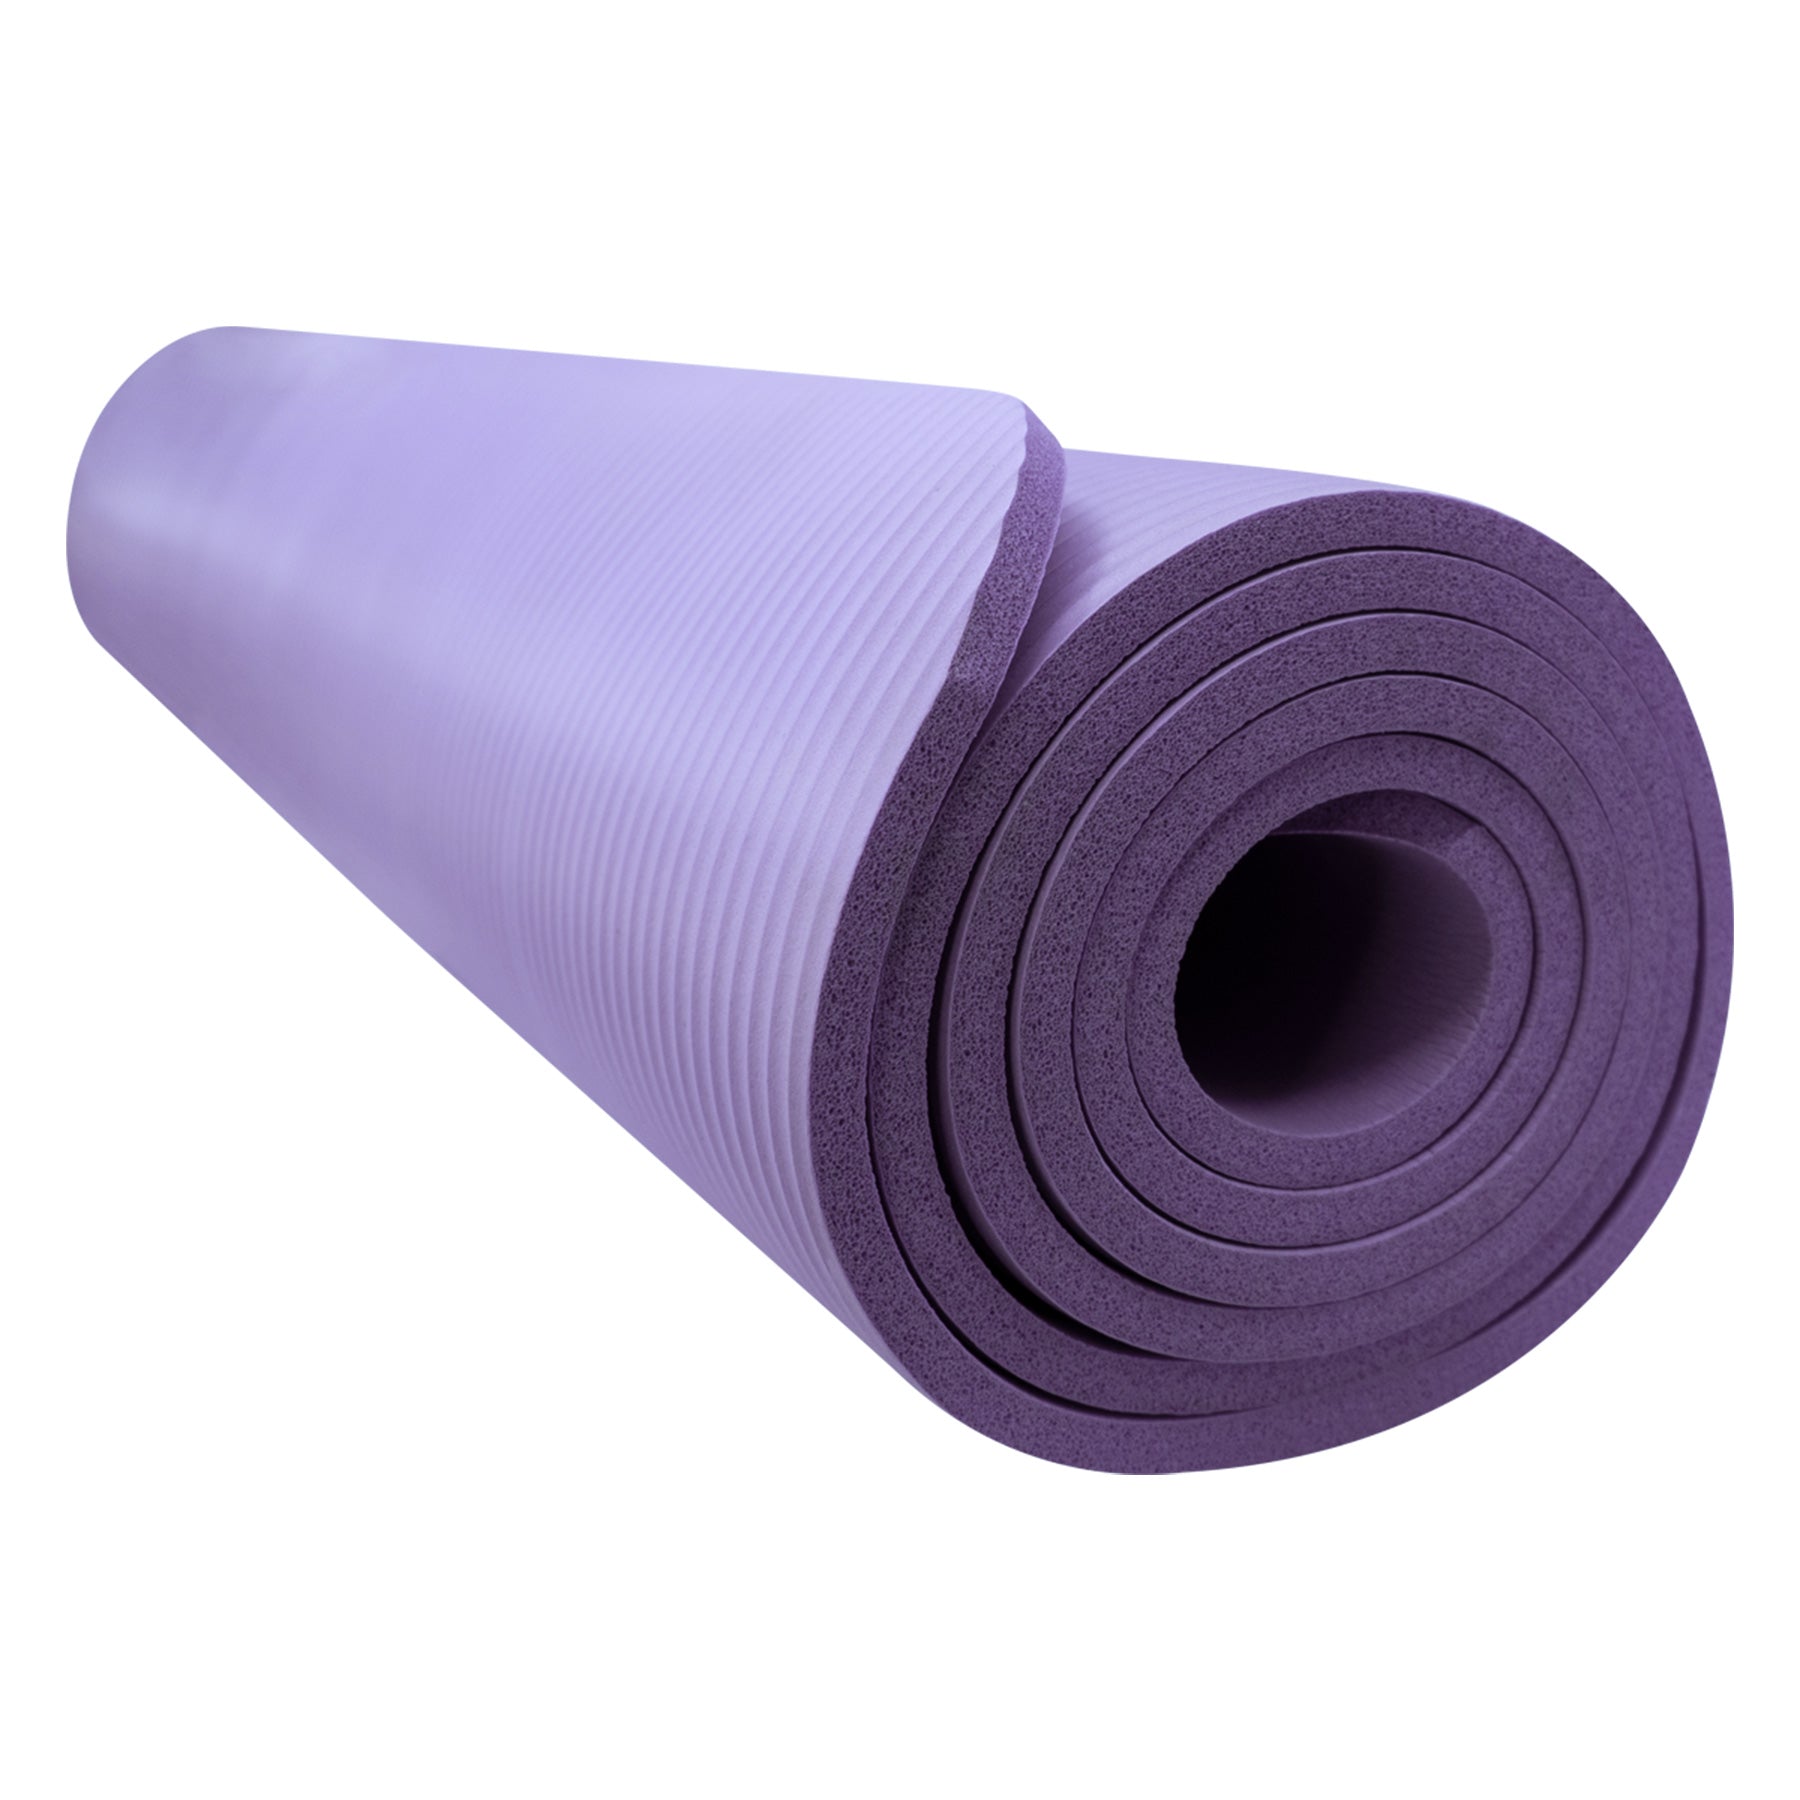 Tapete de Yoga Ecológico 10mm Ejercicio Confortable